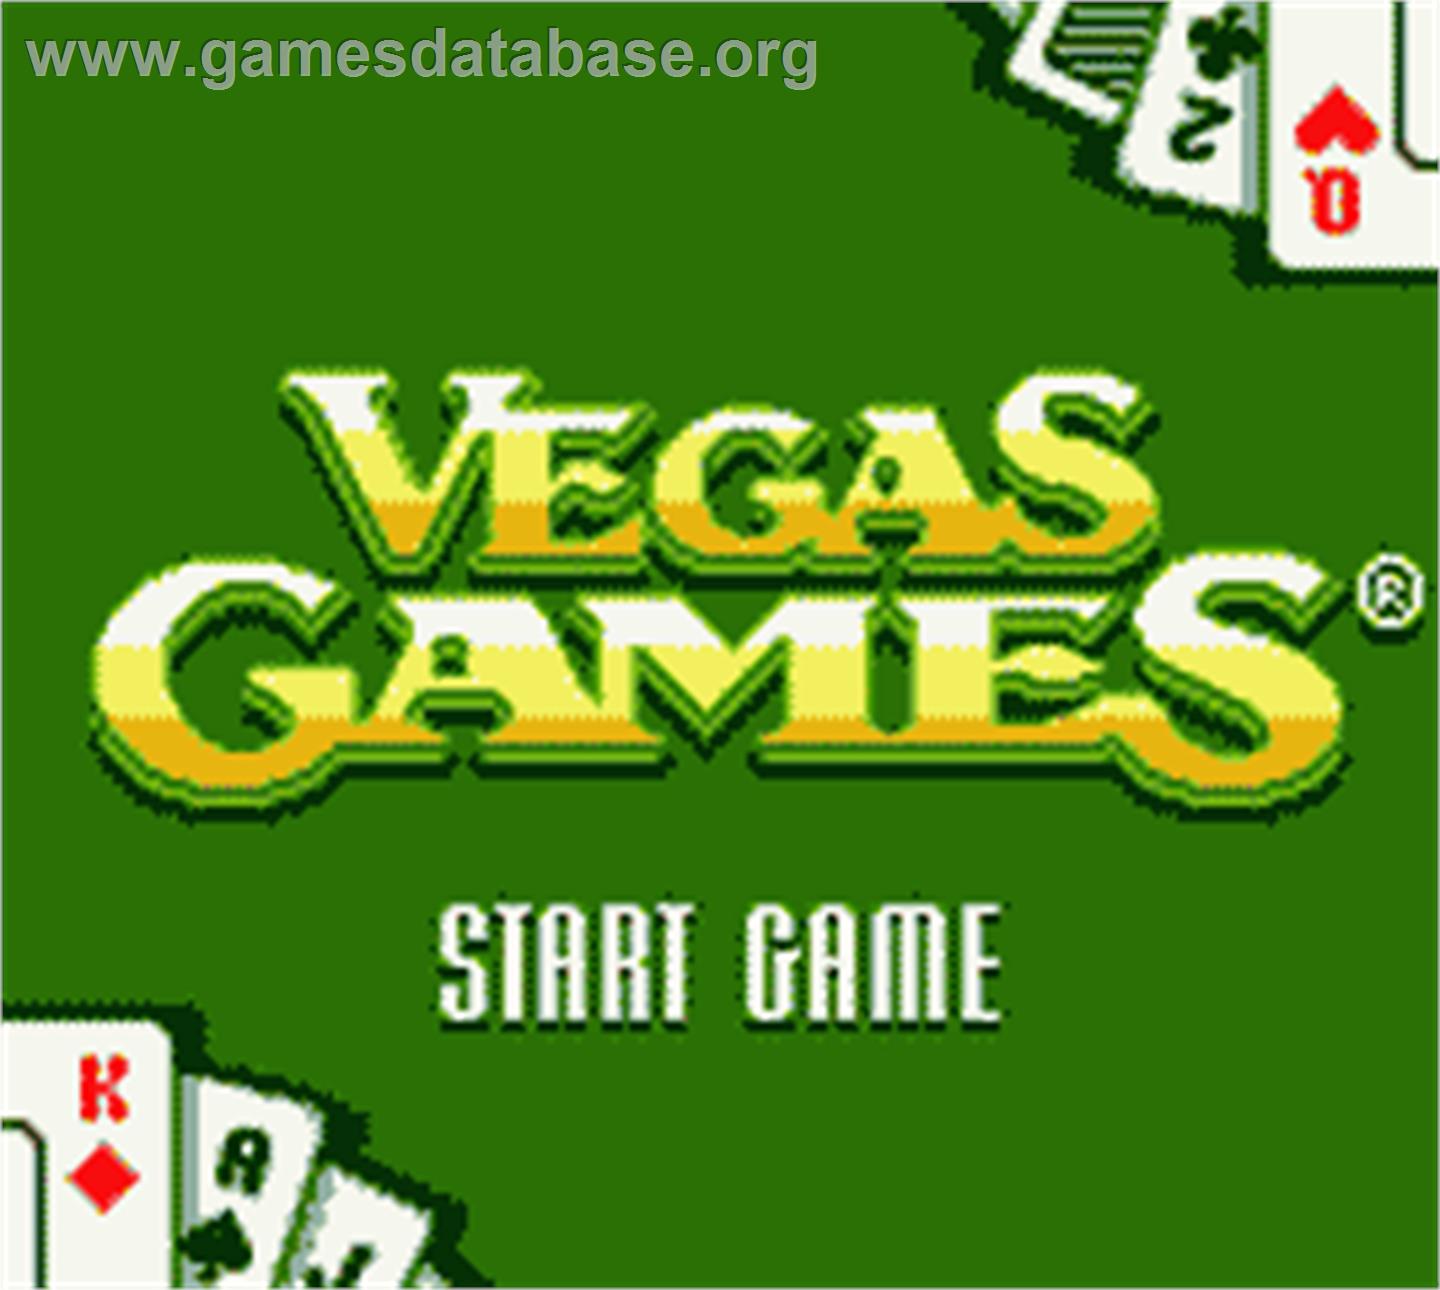 Vegas Games - Nintendo Game Boy Color - Artwork - Title Screen